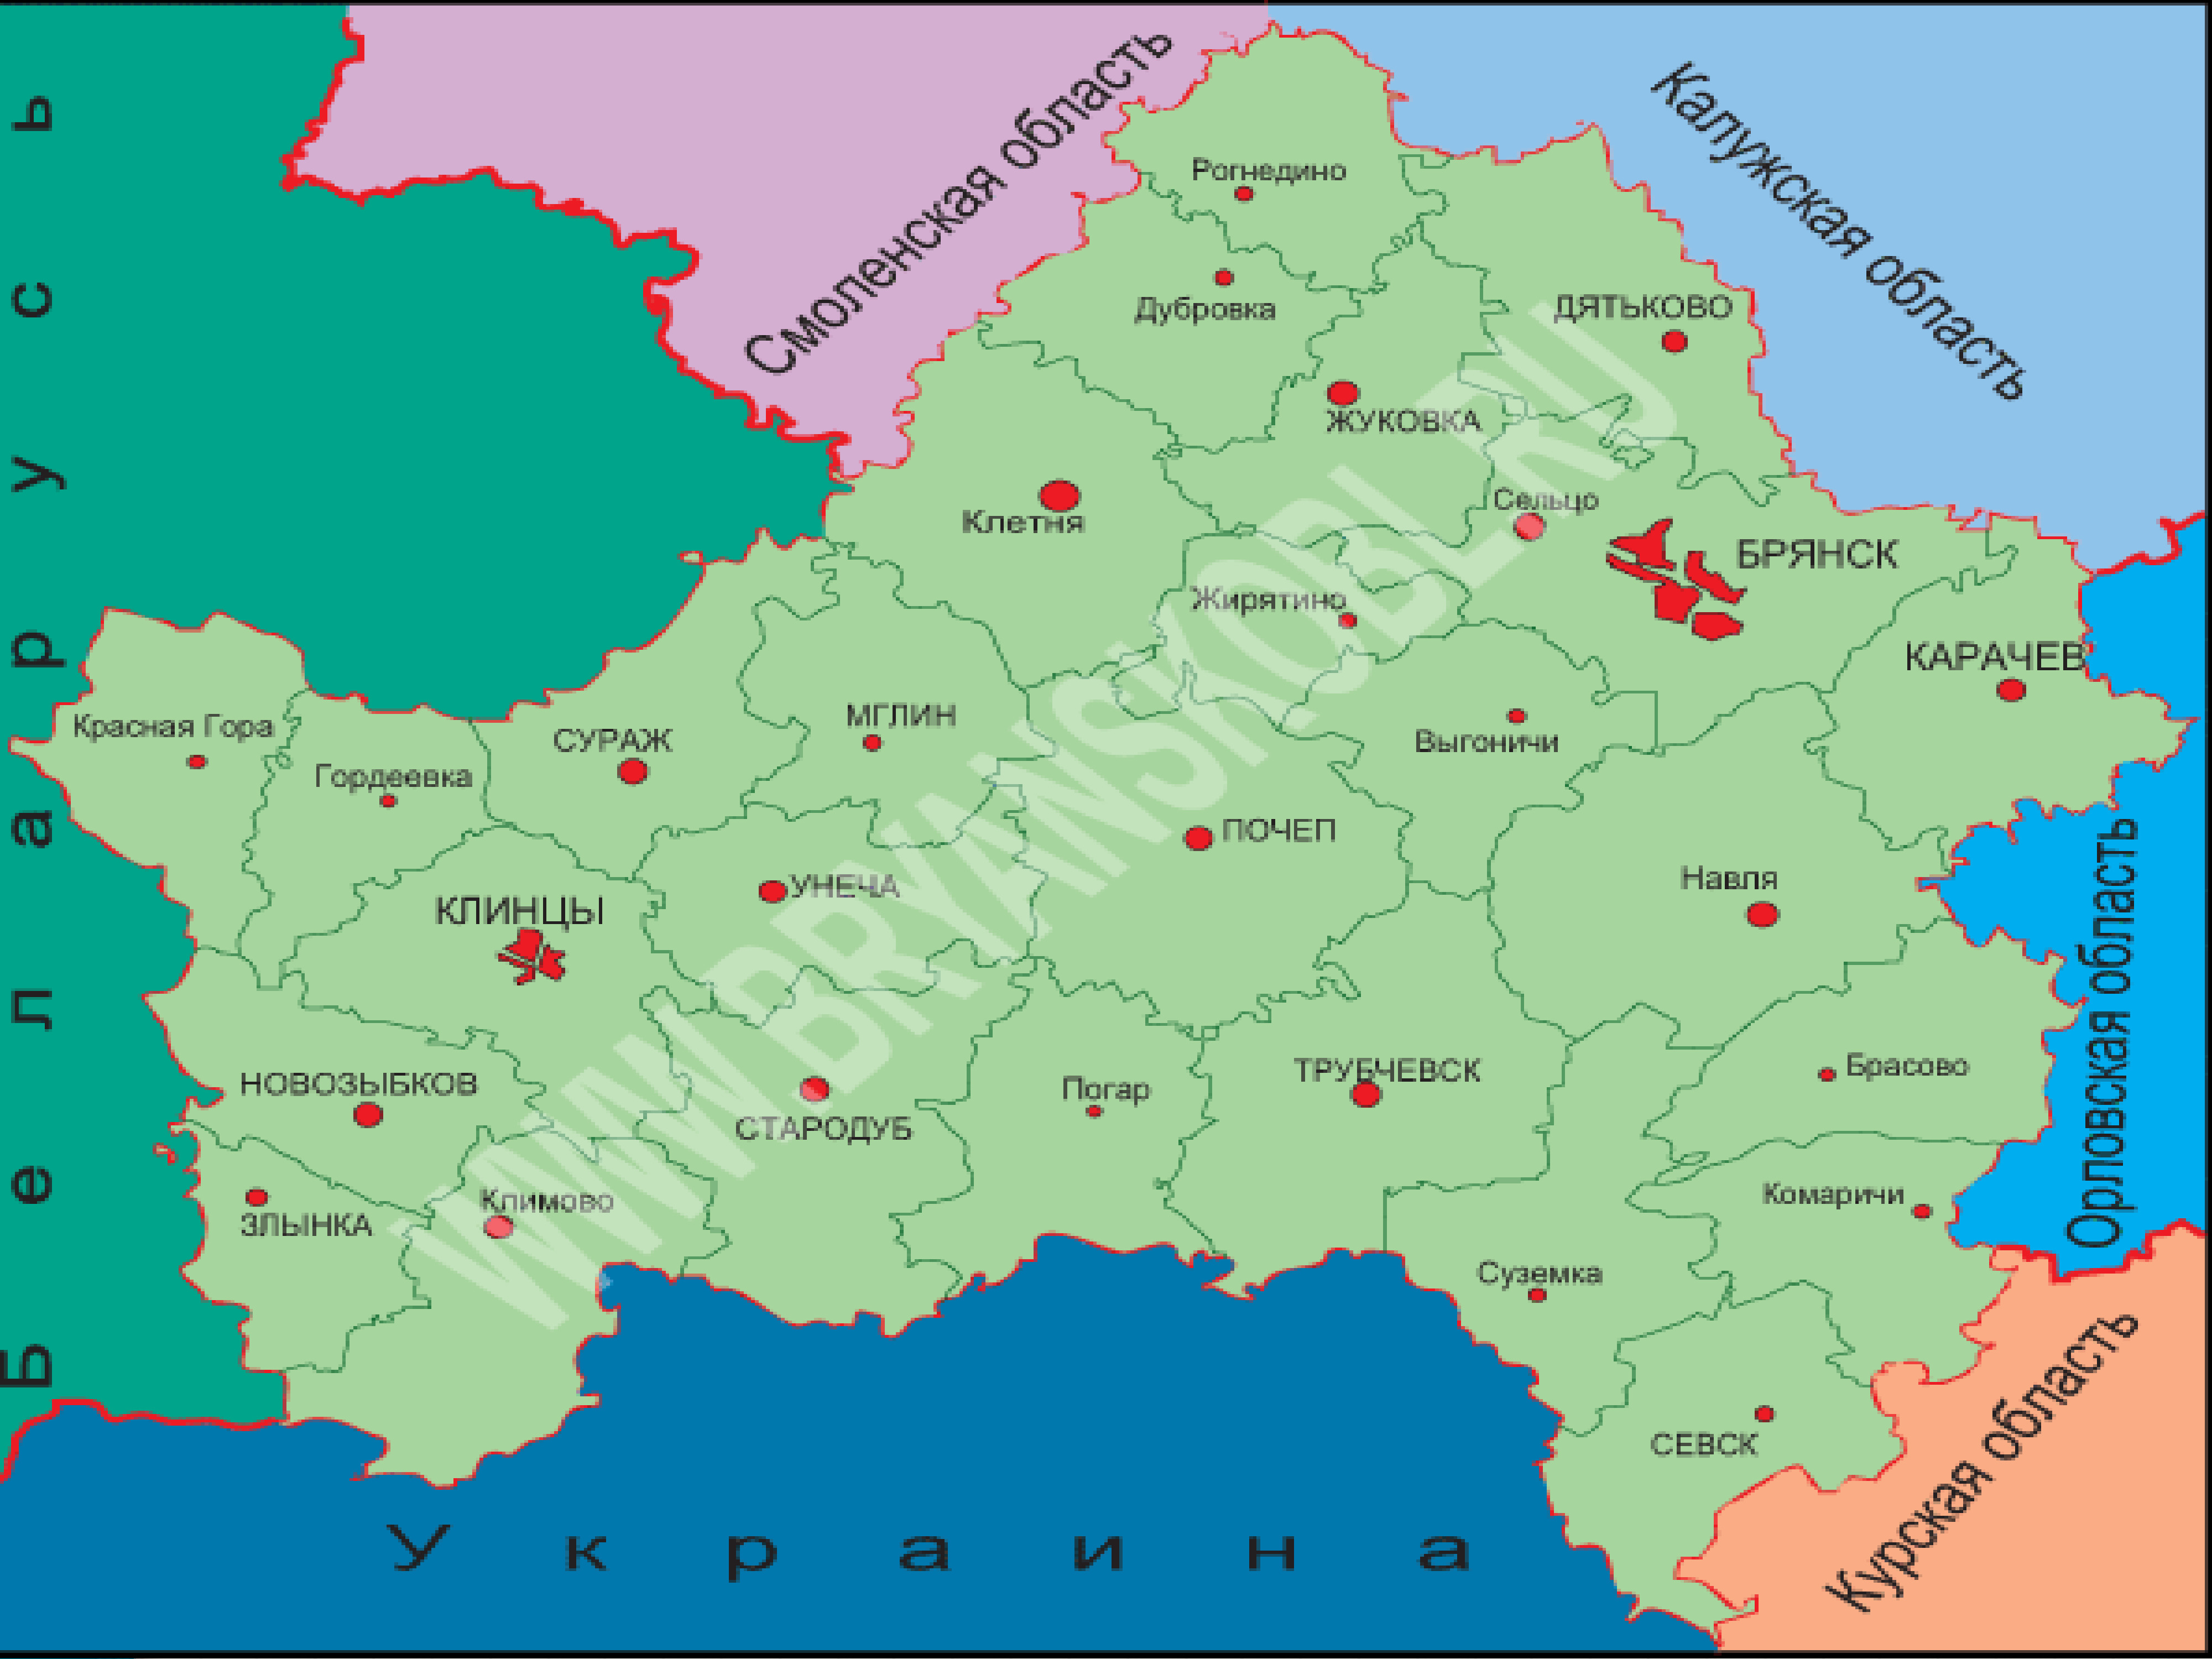 Границы брянской климово с украиной